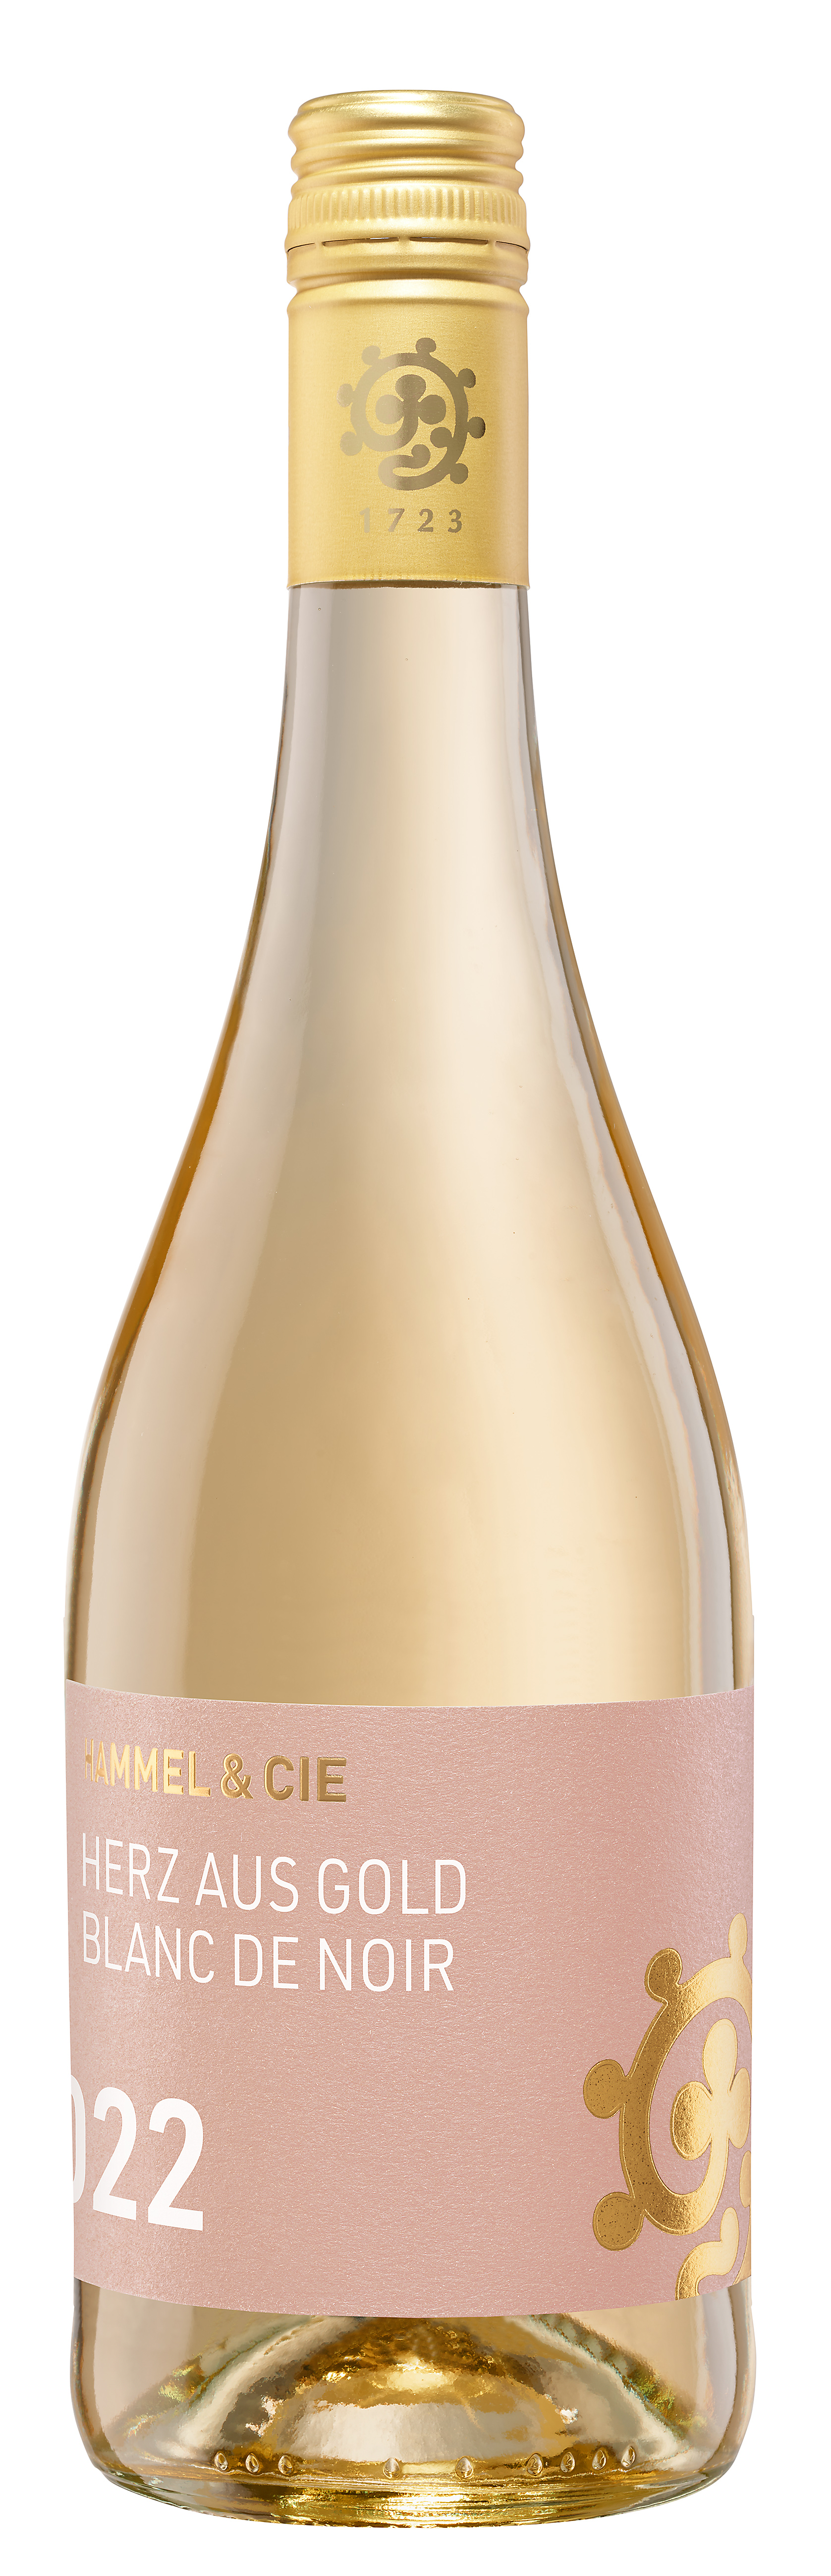 Cie Hammel Aus Herz Bei Trocken 2023 + | online Gold Weinhandel C&D Pfalz De kaufen | Weinshop Wein Noir & Blanc guten